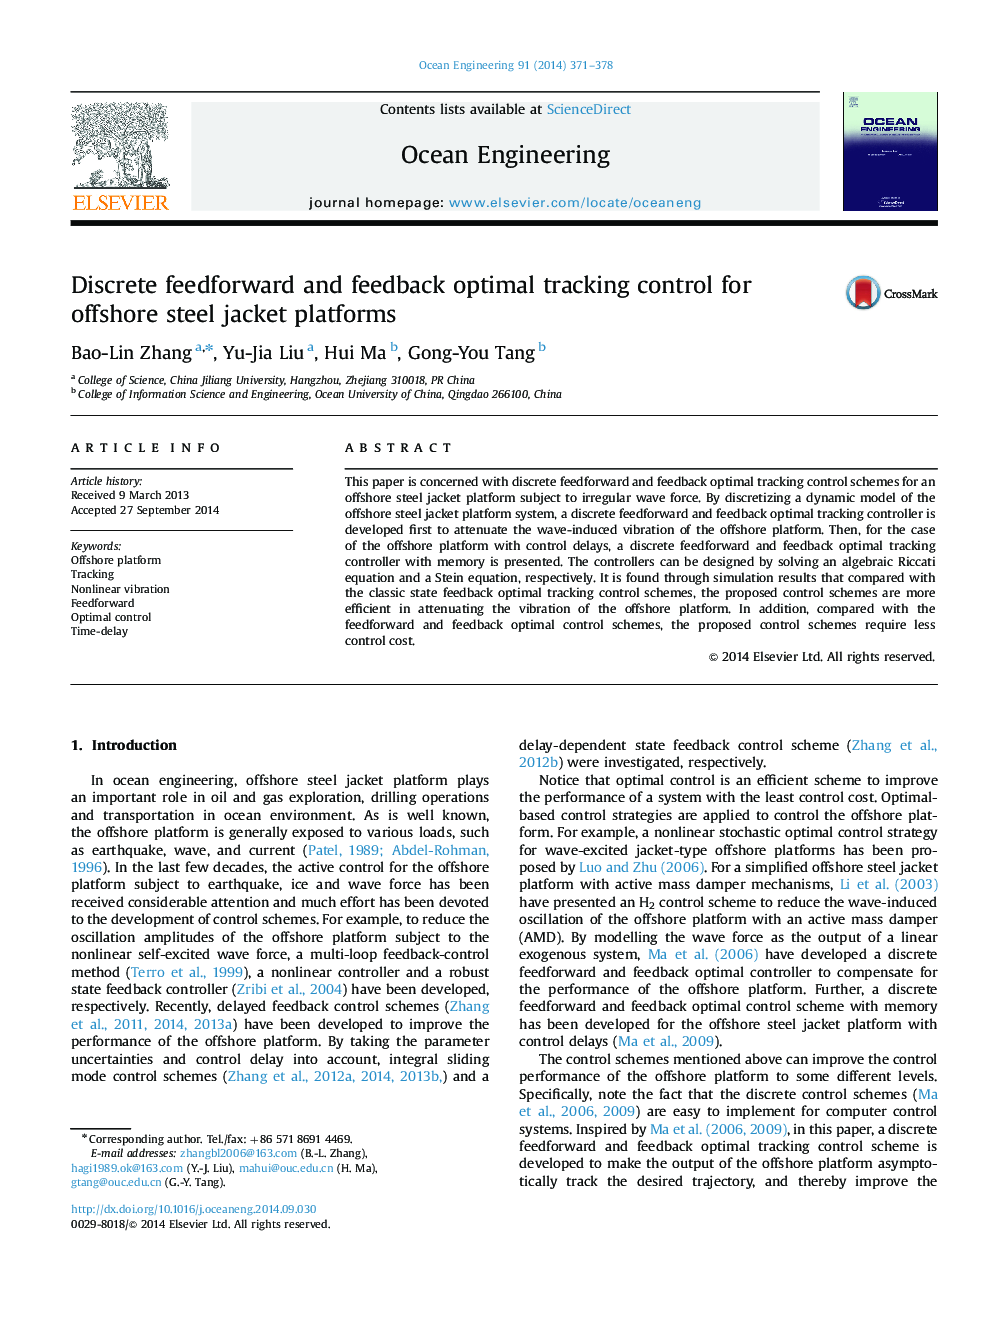 کنترل ردیابی فیدبک و بازخورد گسسته برای سیستم عامل های ژاکت فولادی دریایی 